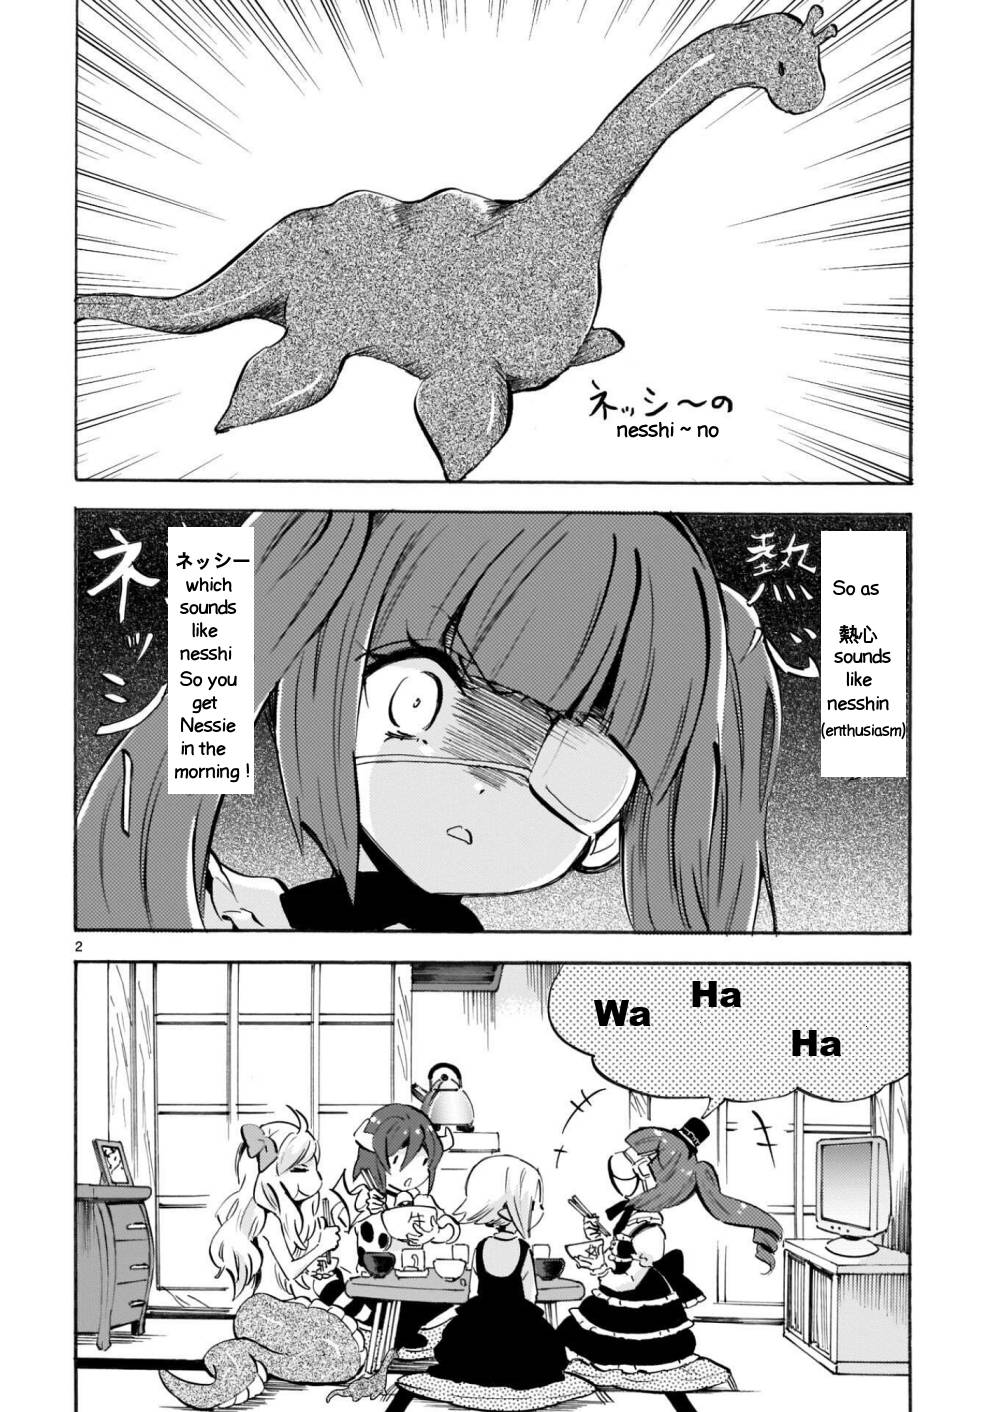 Jashin-chan Dropkick chapter 174.4 page 2